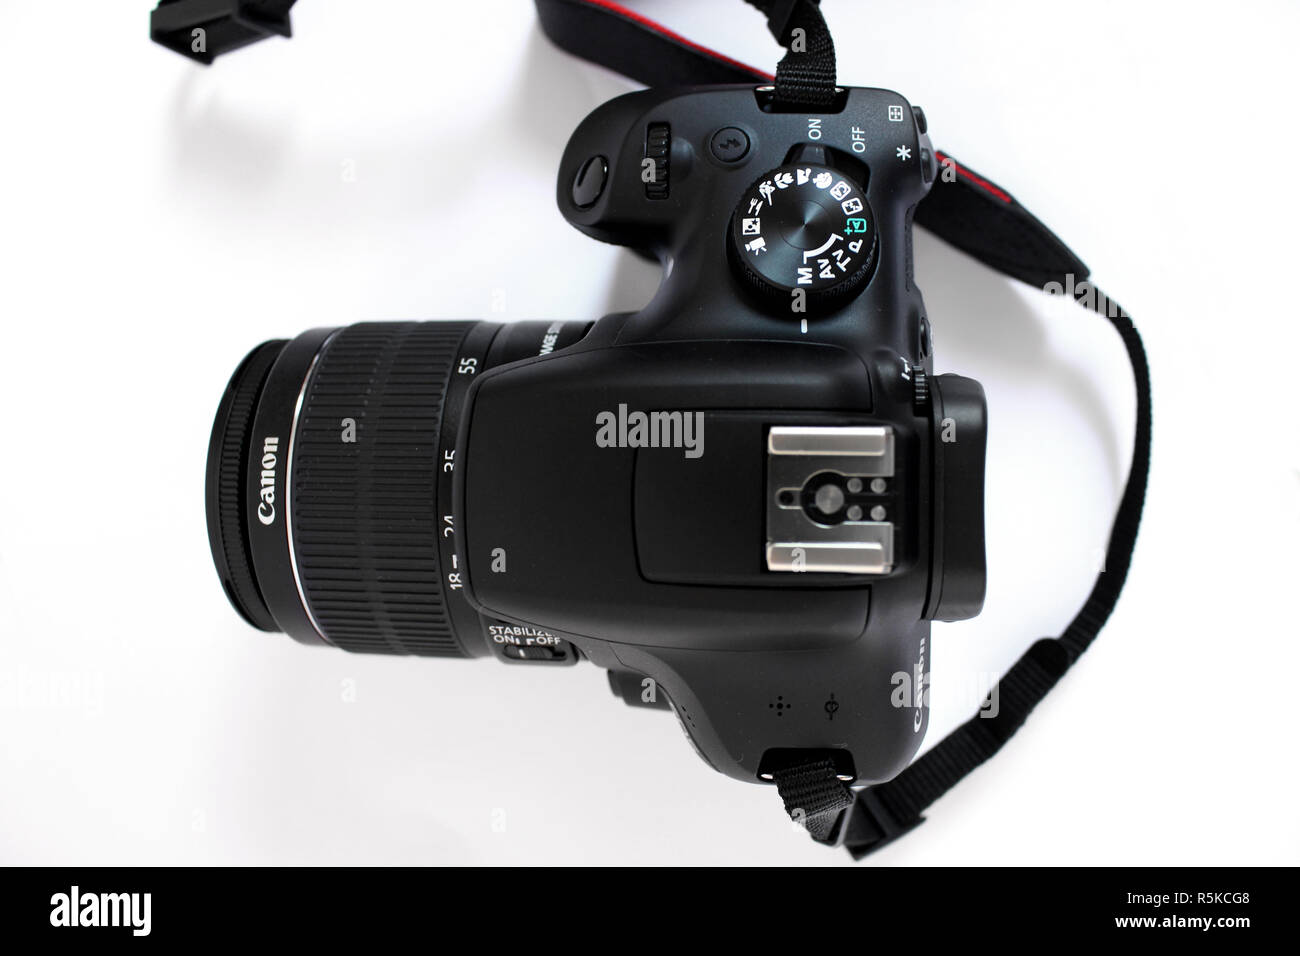 Canone efs immagini e fotografie stock ad alta risoluzione - Alamy